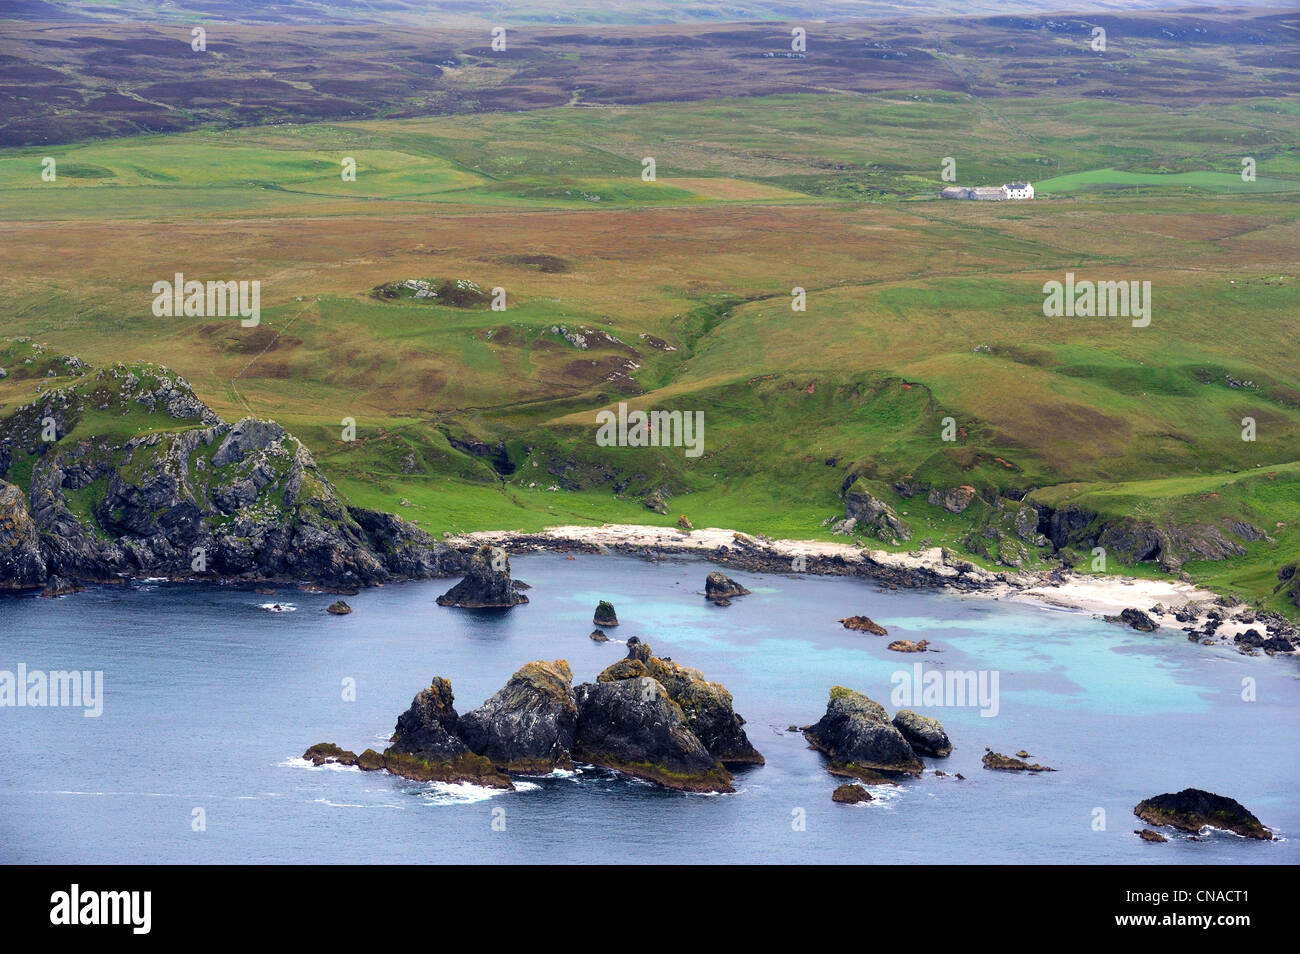 Regno Unito, Scozia, Ebridi Interne, isola di Islay, podere isolato sulla costa frastagliata dell'Oa a sud di Port Ellen Foto Stock